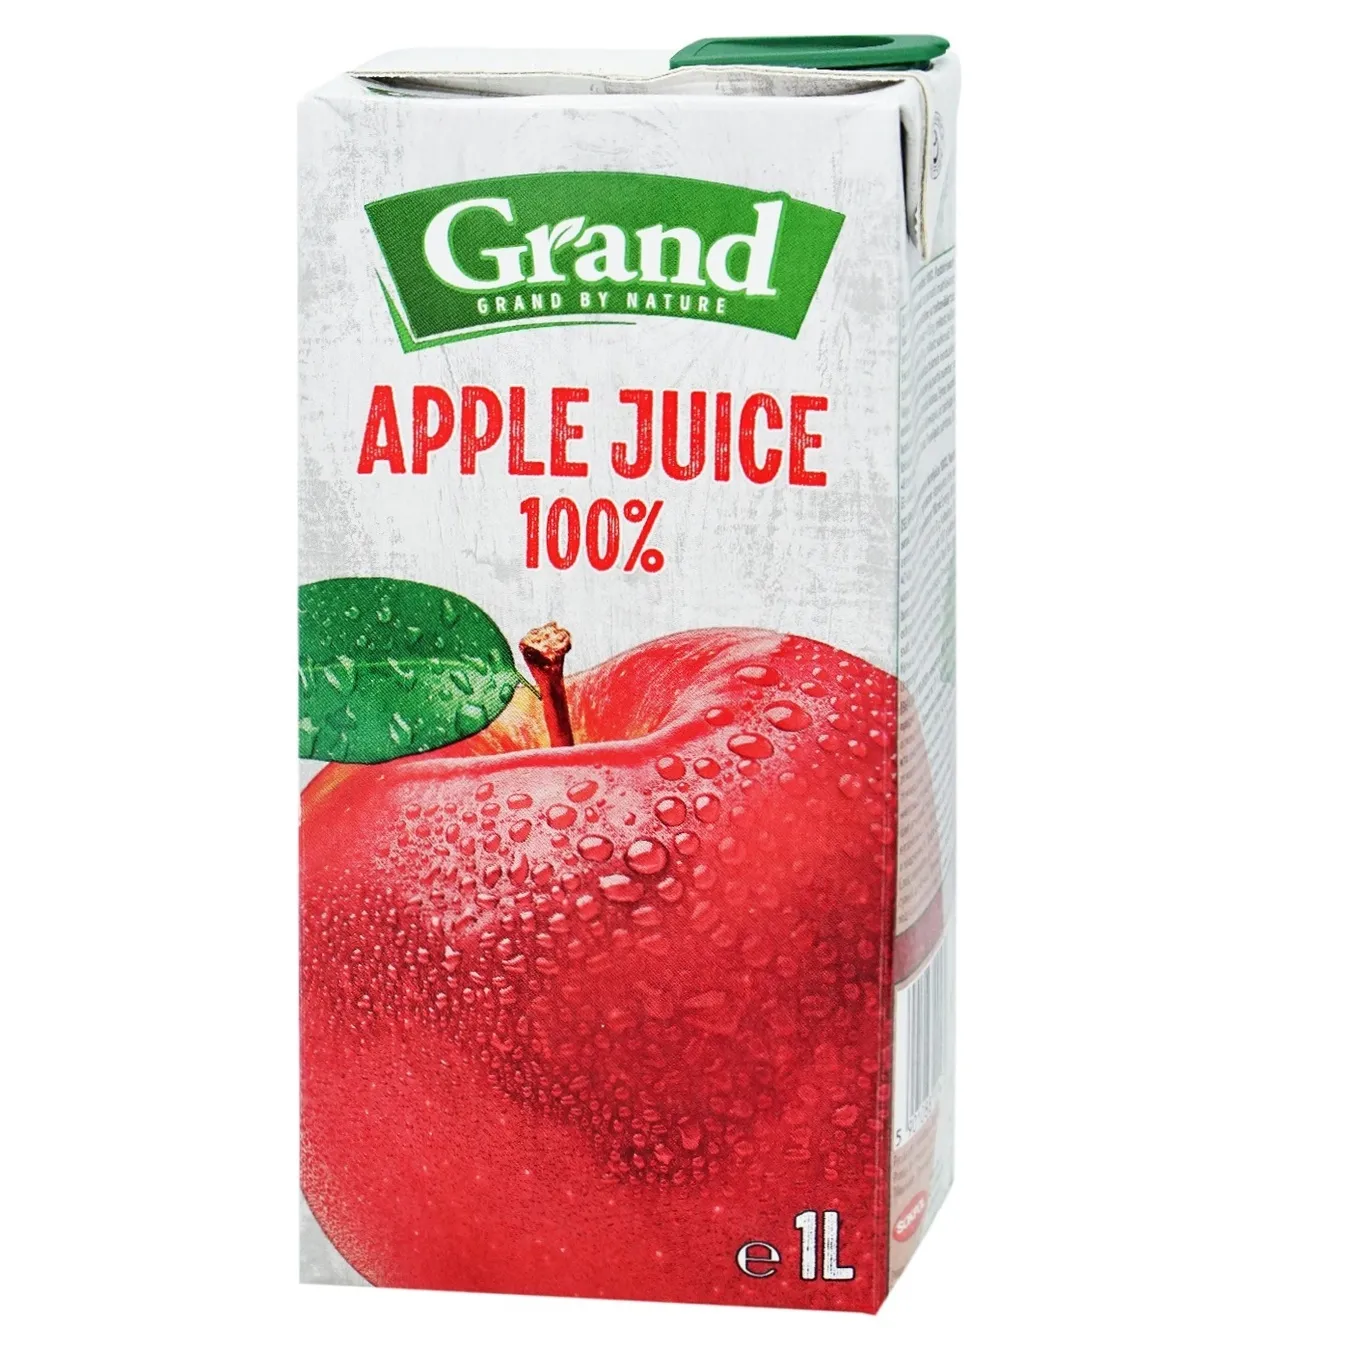 Grand apple juice 1 l